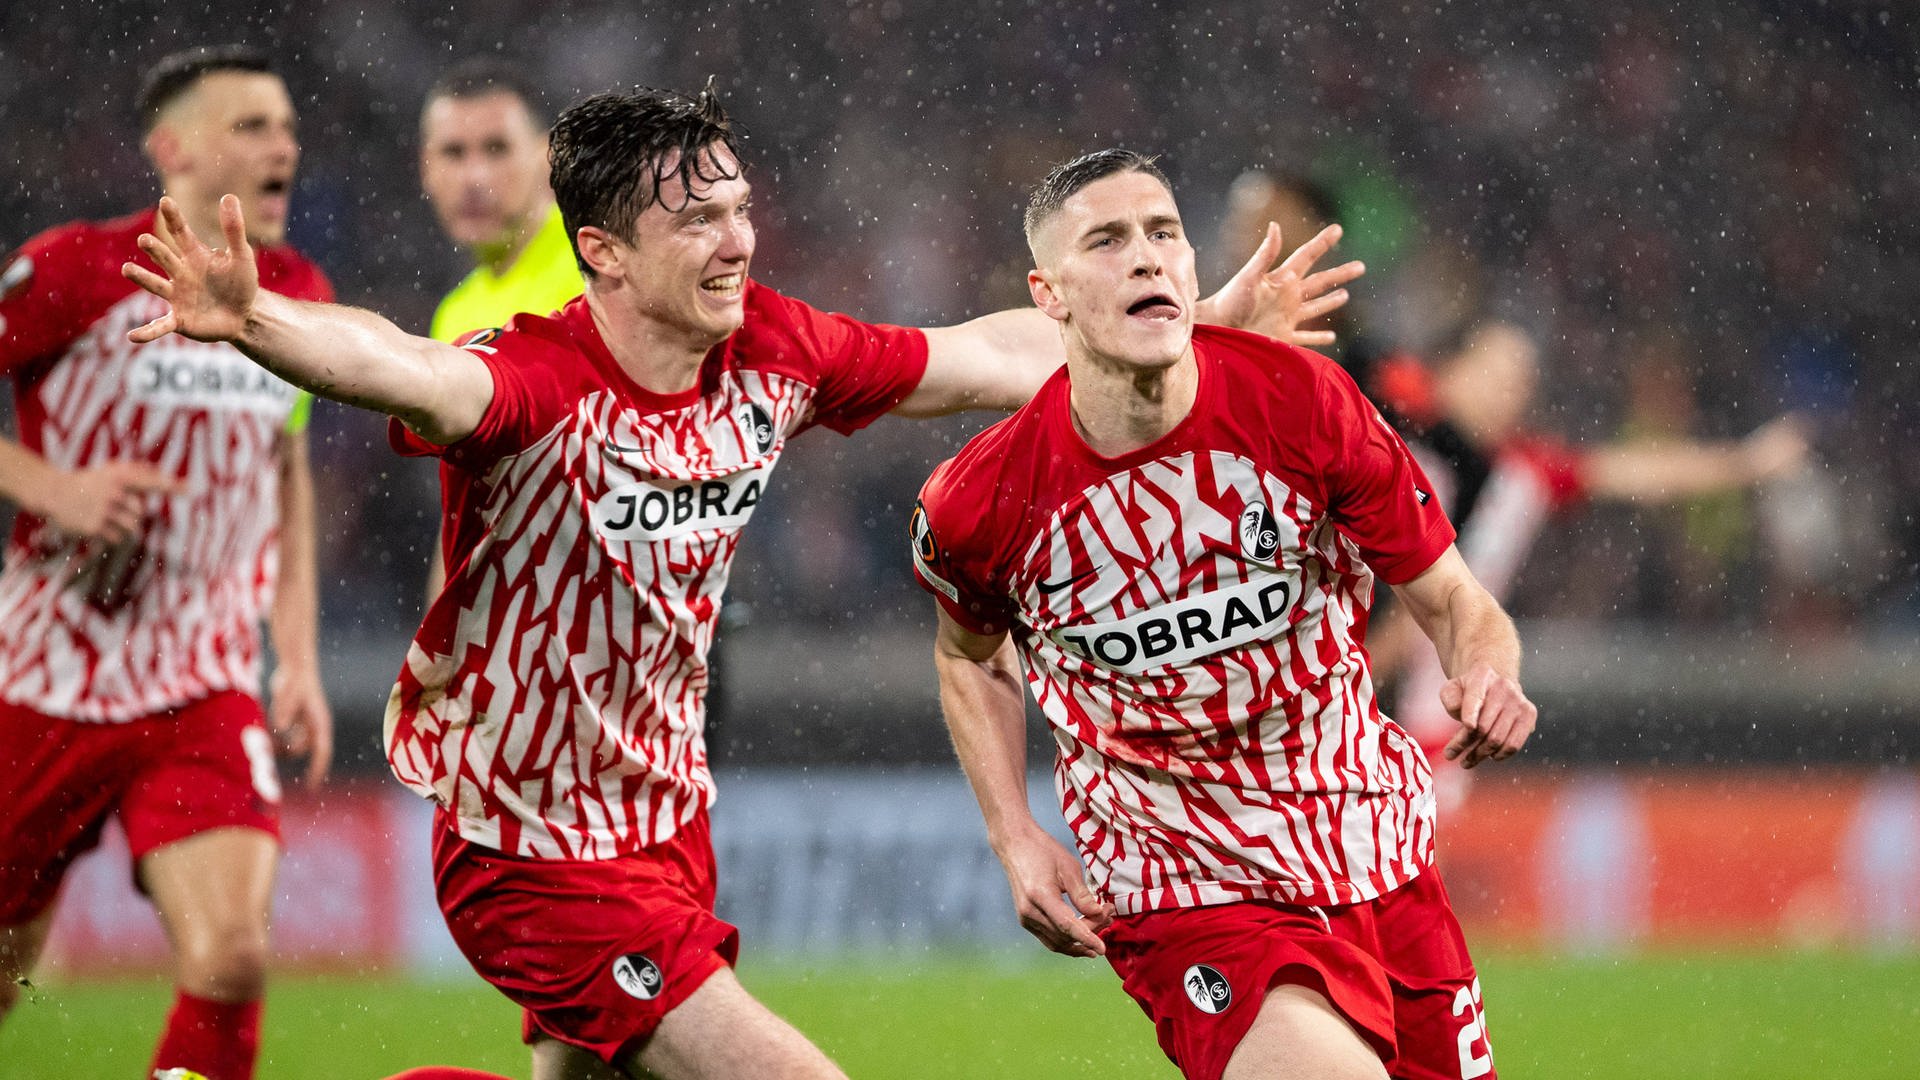 Chance auf Revanche: Achtelfinal-Gegner des SC Freiburg steht fest